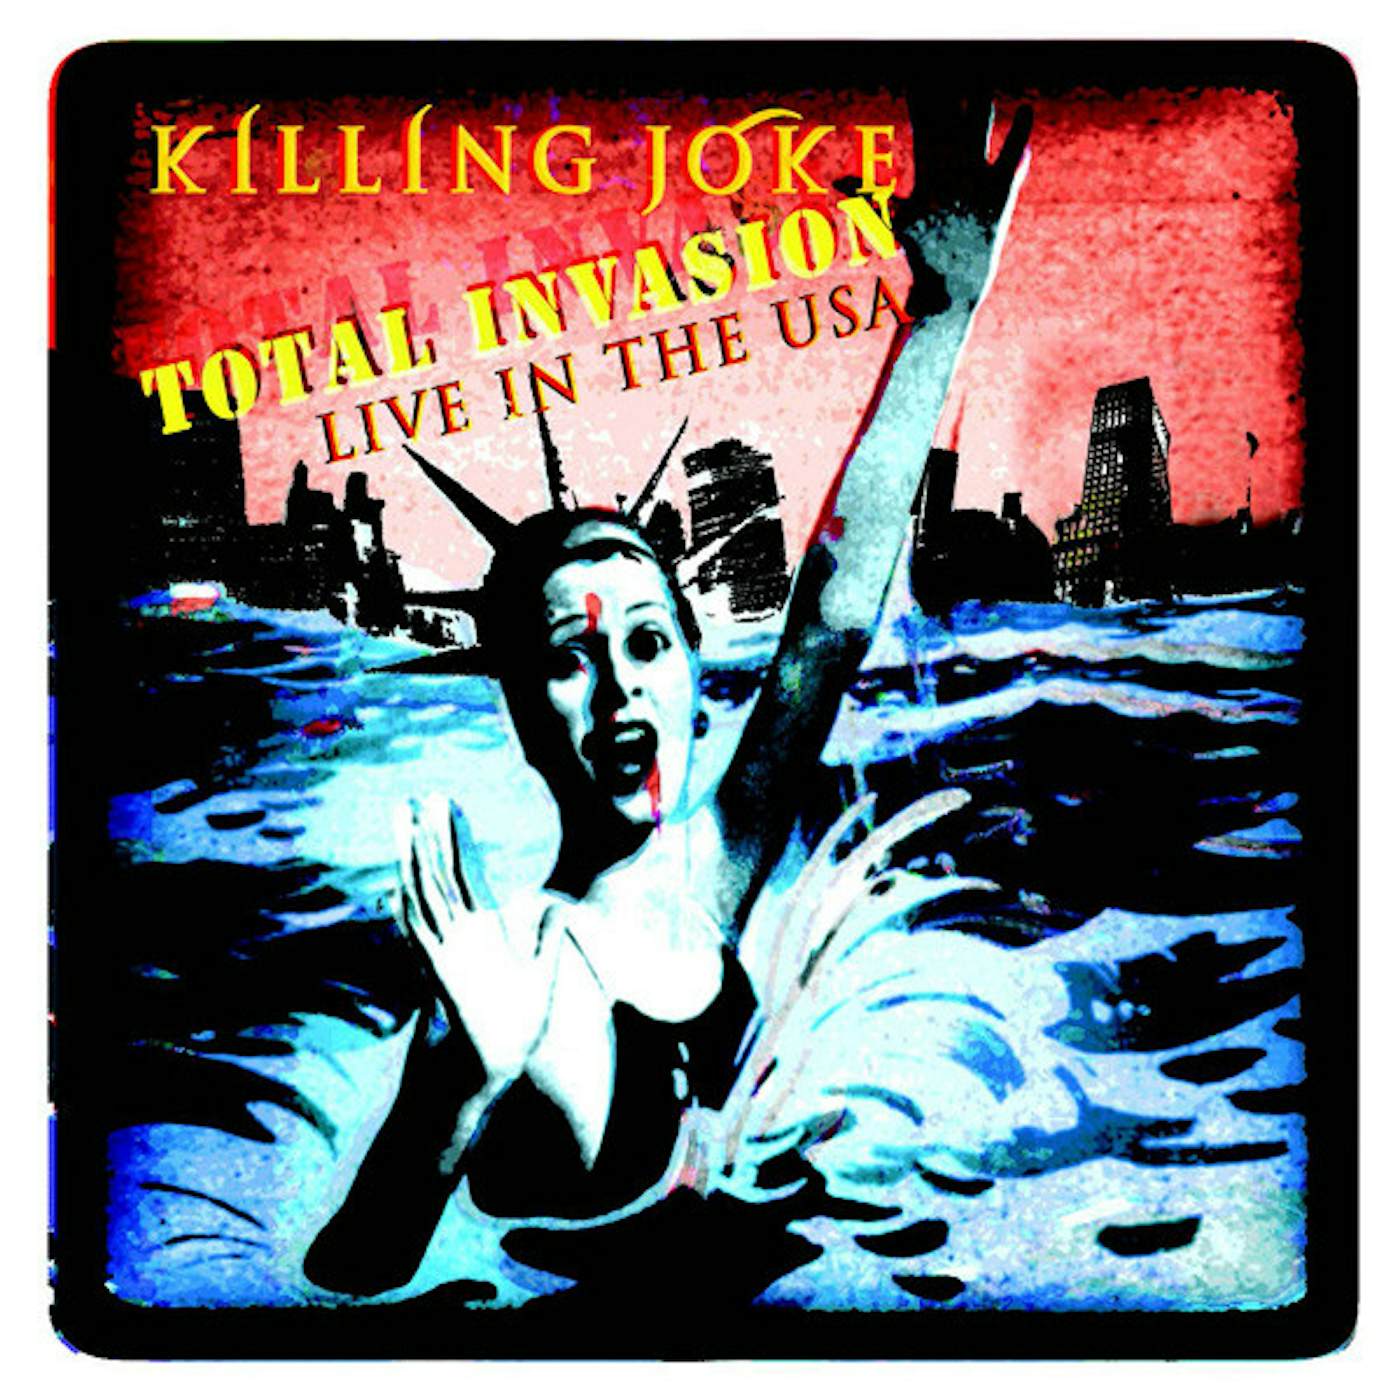 Killing Joke Total Invasion Live In The Usa Vinyl Record